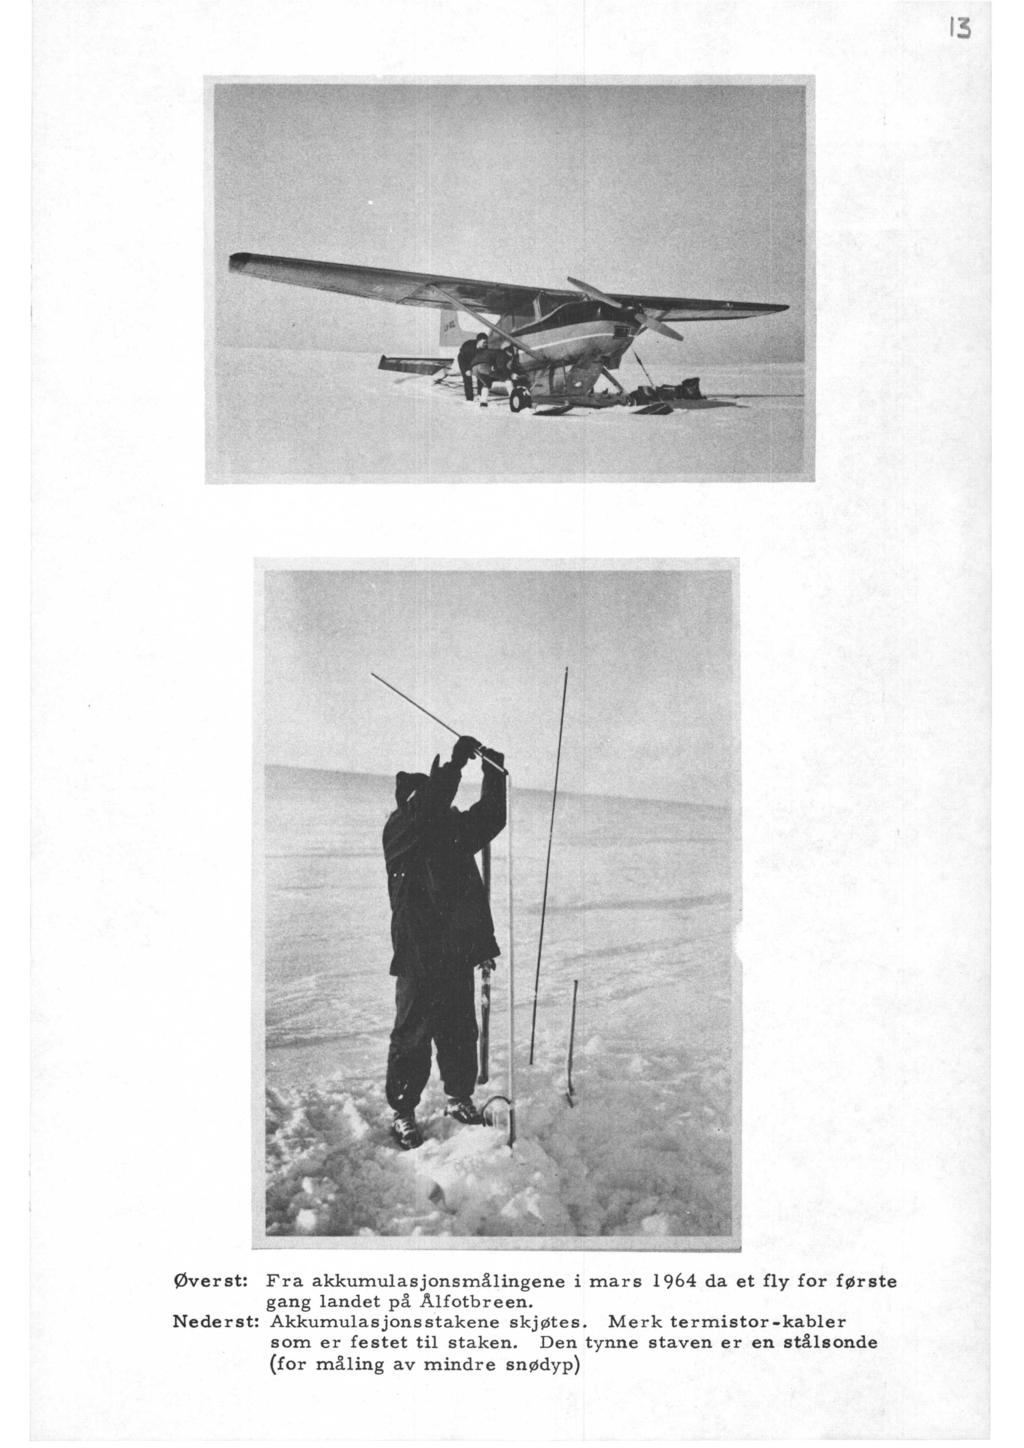 øverst: Fra akkumulasjonsmålingene i mars 1964 da et fly for første gang landet på Ålfotbreen.